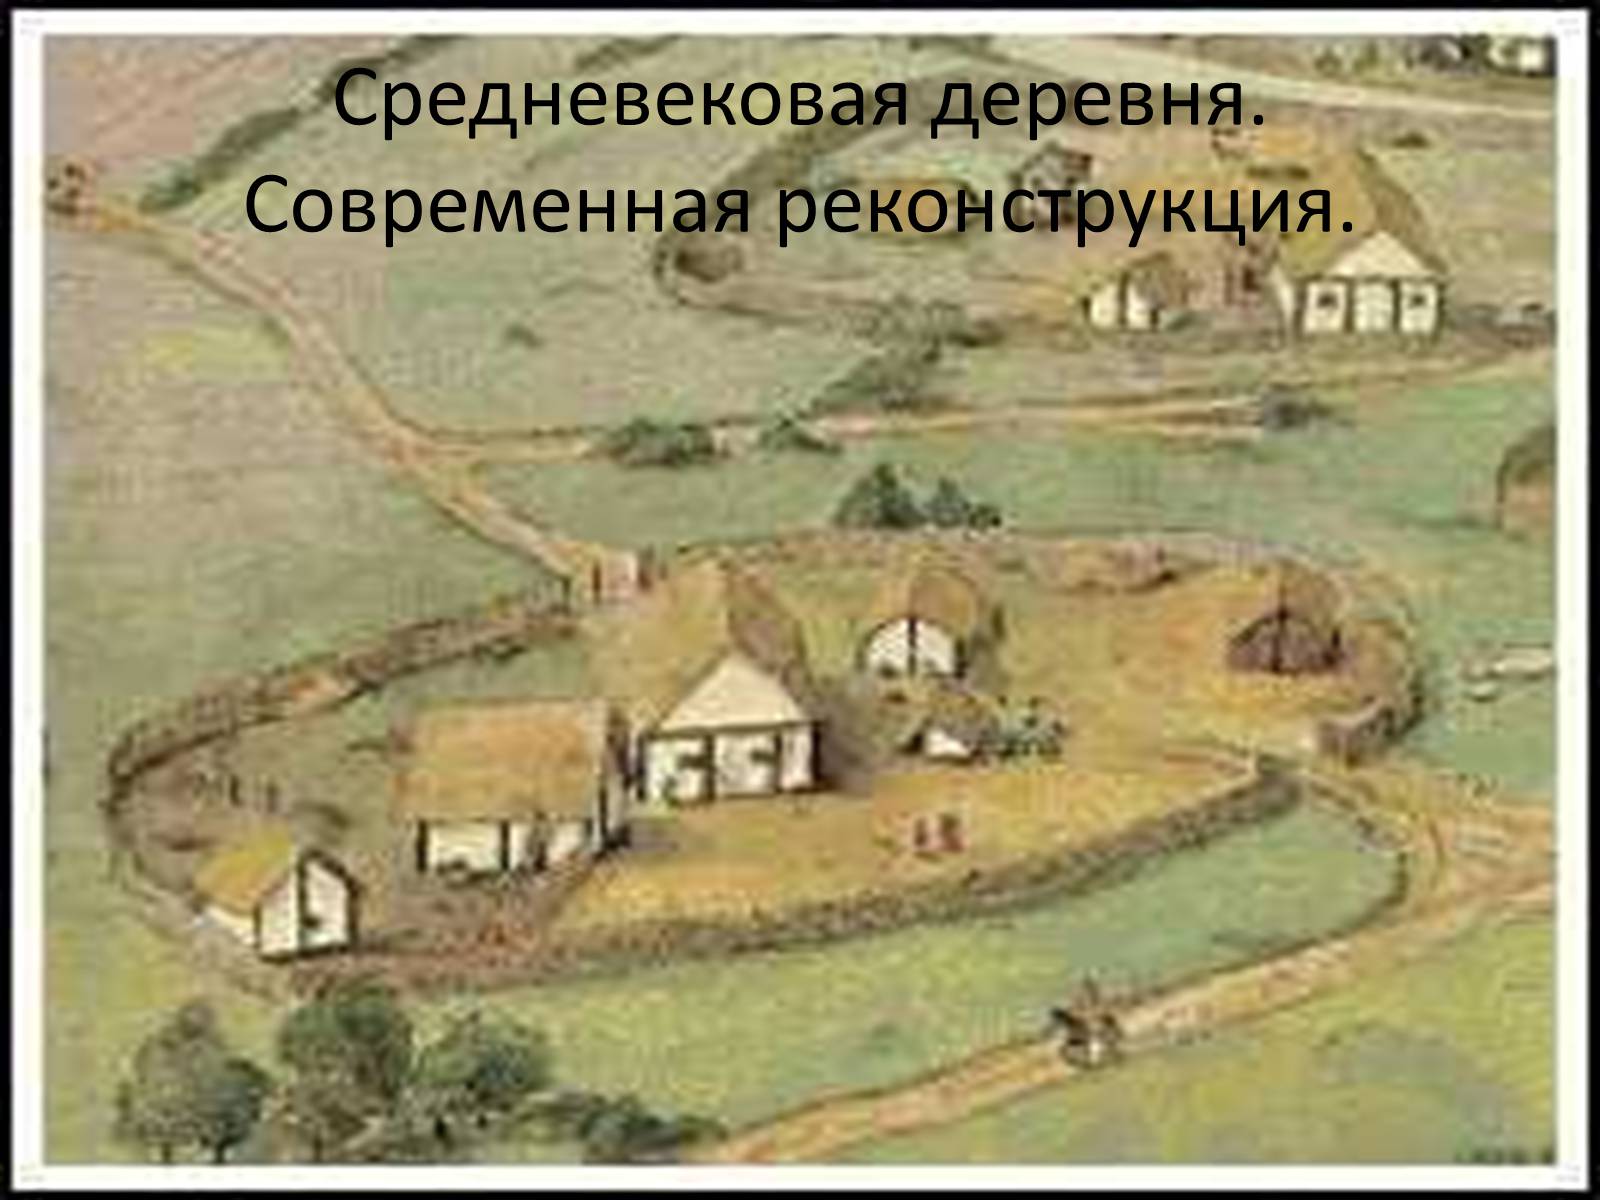 Средневековая деревня рисунок